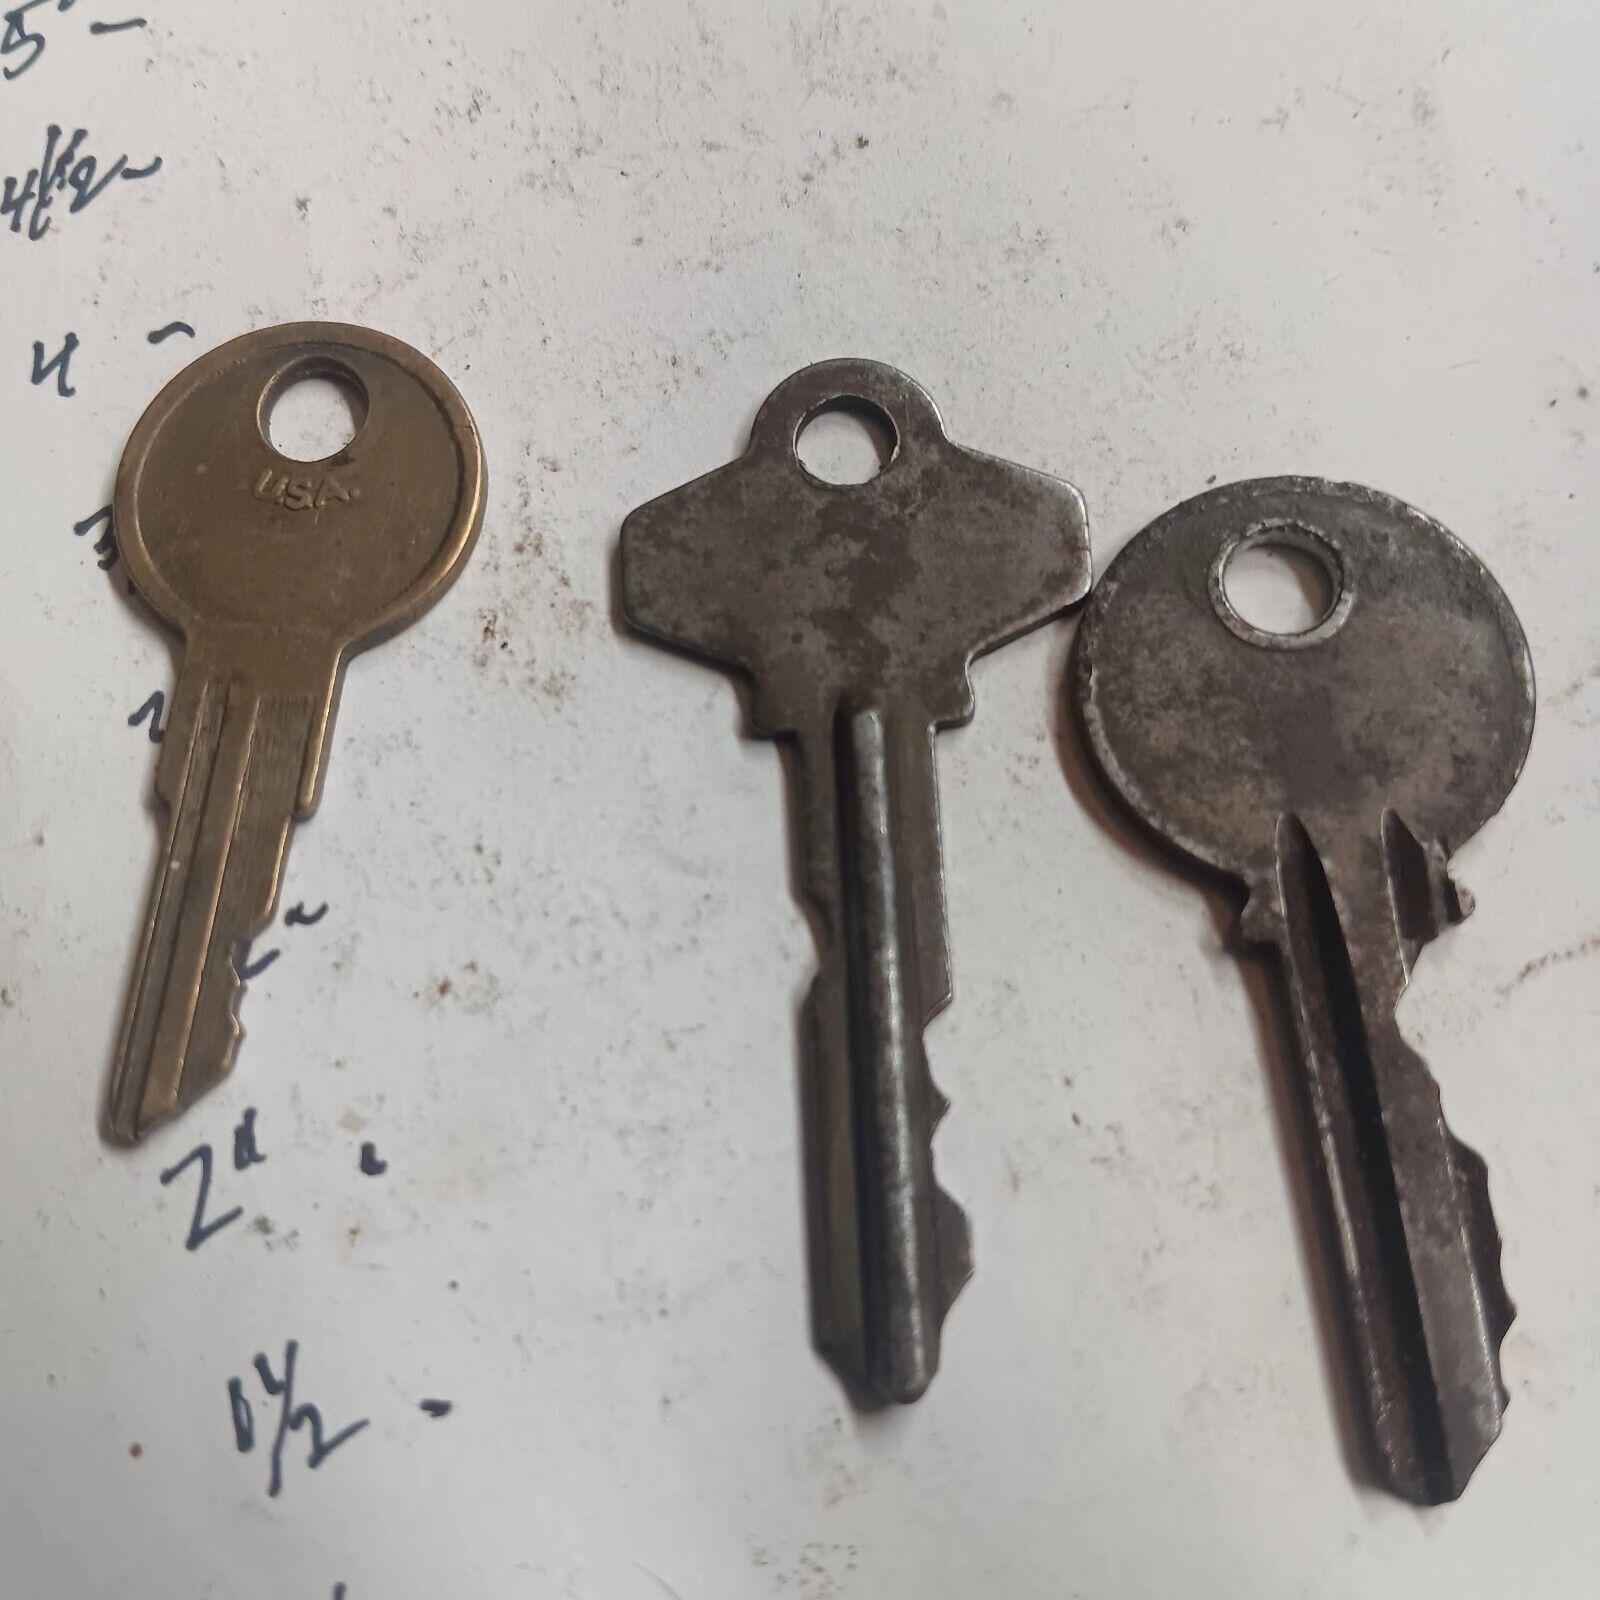 3 Vintage And Different Curtis Ind.keys.